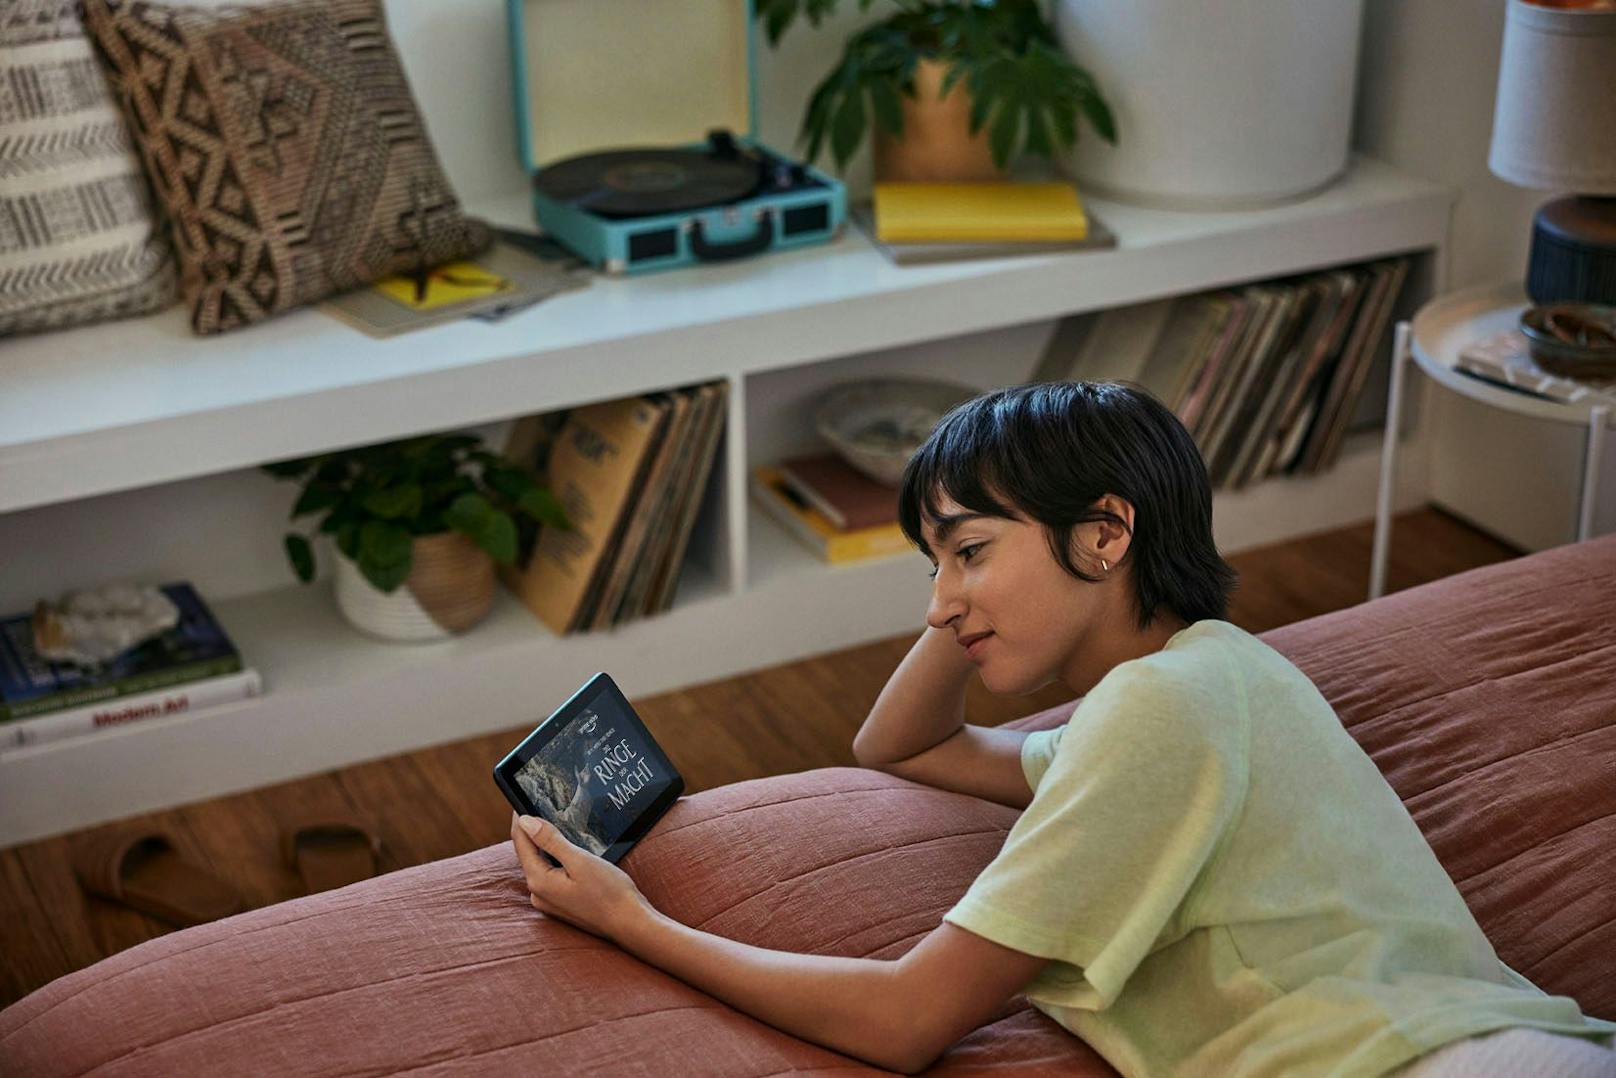 Dünner, leichter, schneller und ideal für Unterhaltung: Amazon stellt neue Fire HD 8-Tablets vor.